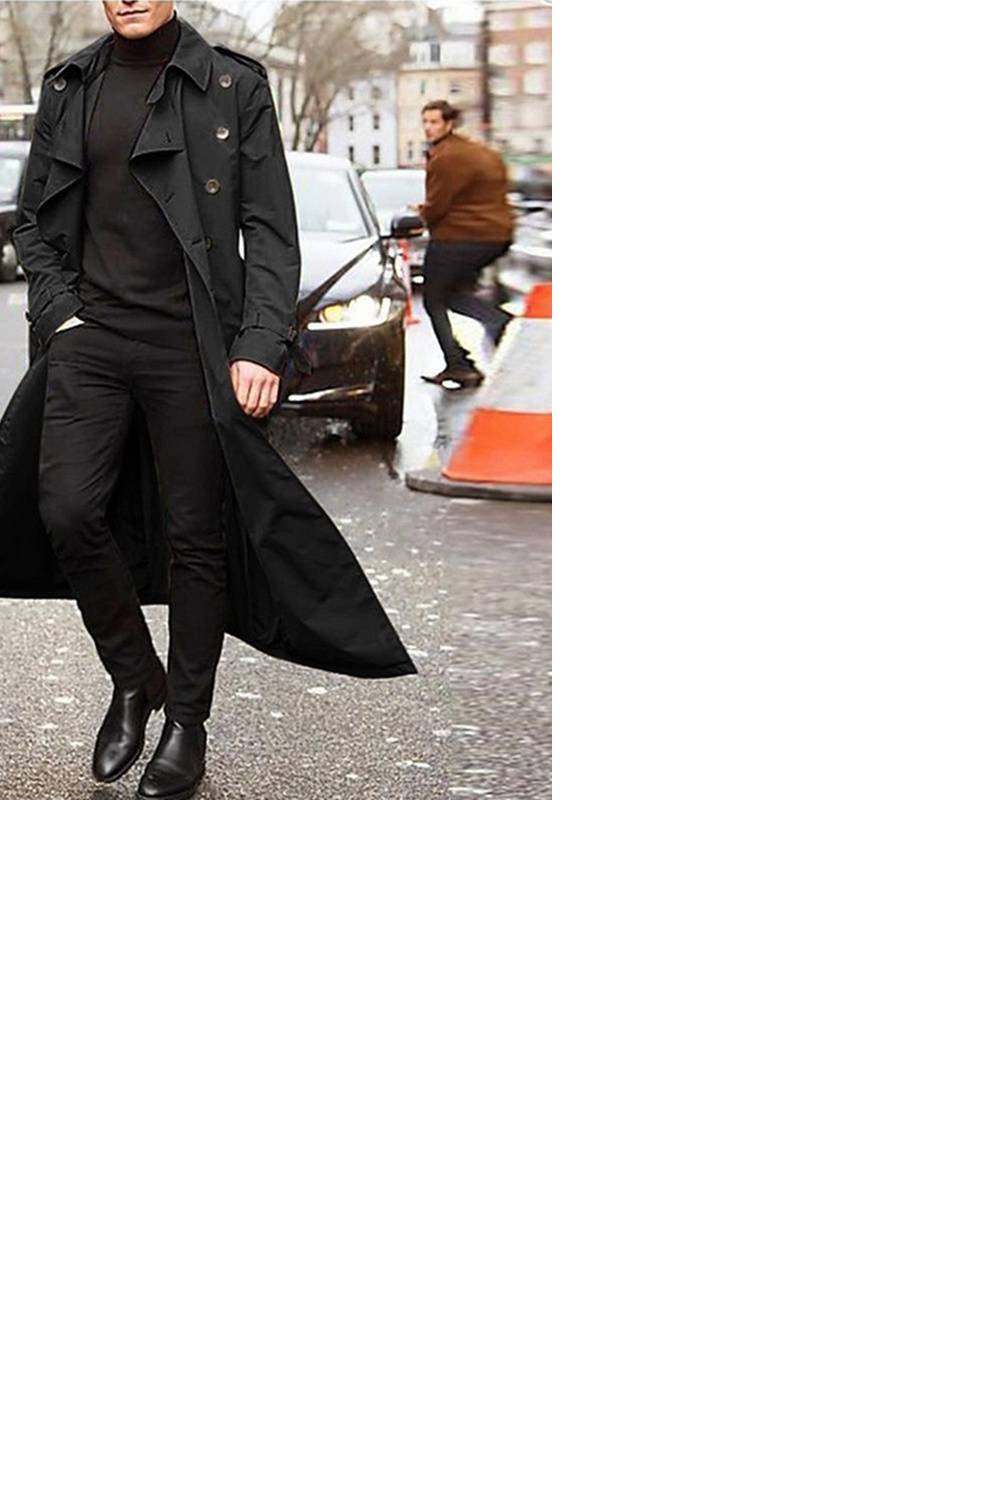 GENERICO medio largo casual trench coat-negro. falabella.com